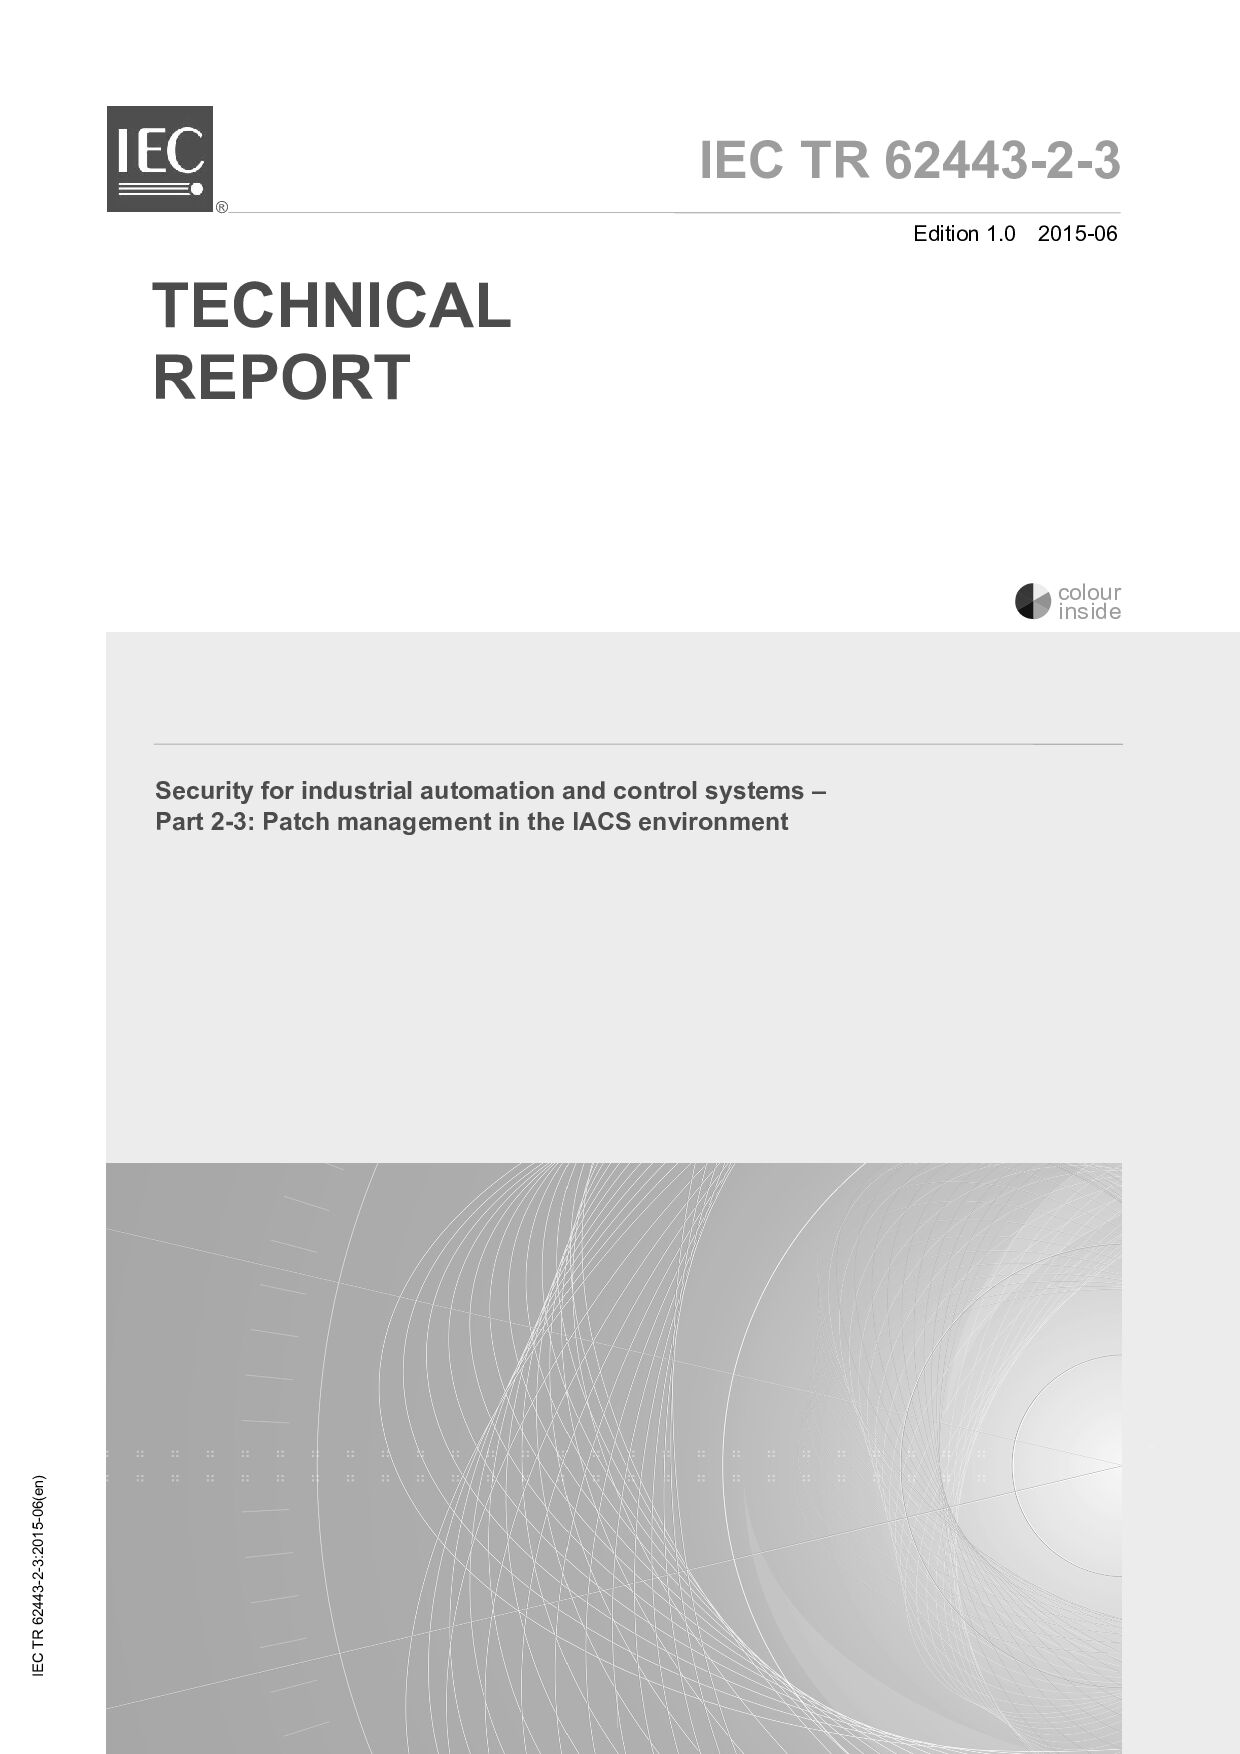 IEC/TR 62443-2-3-2015